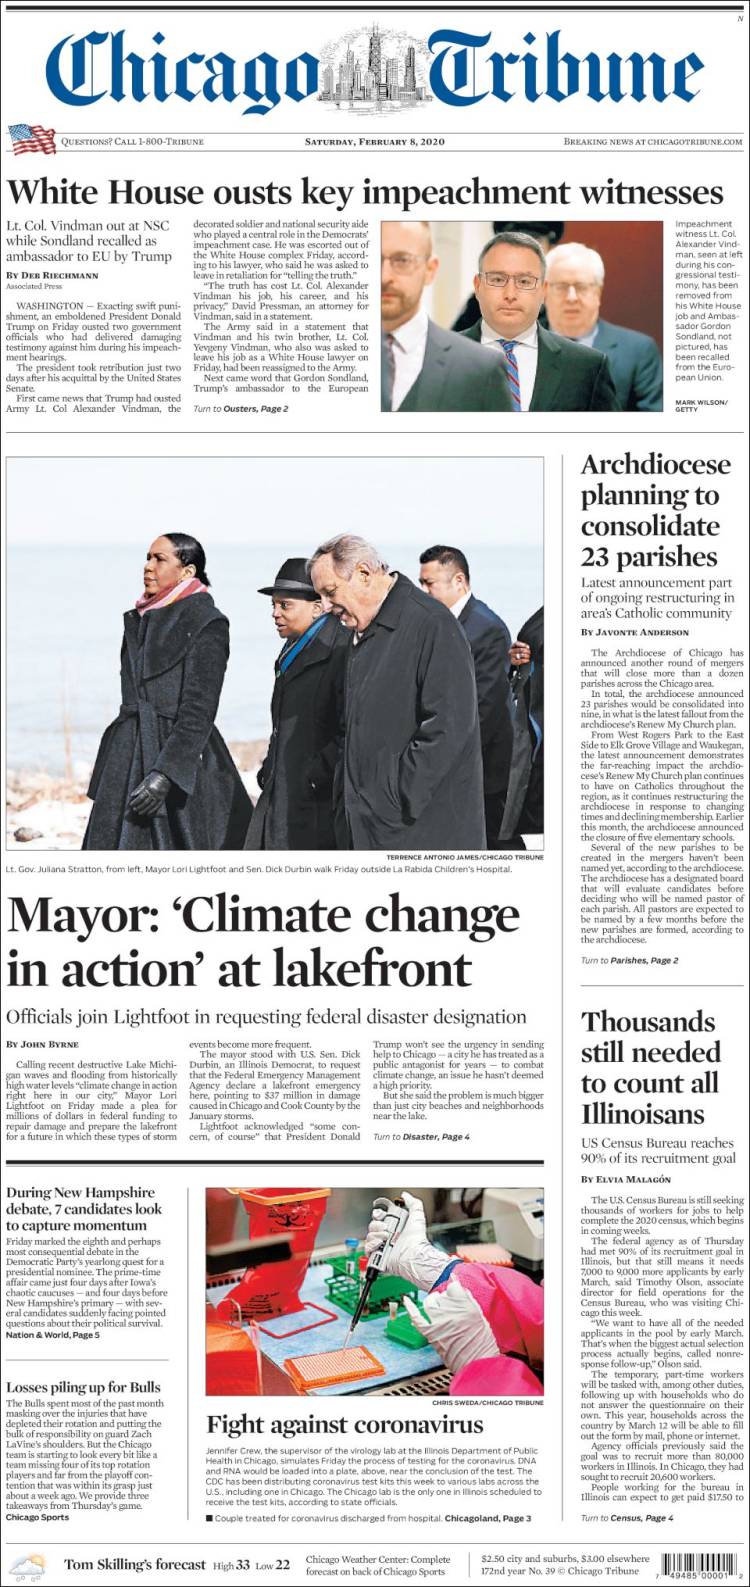 صفحه اول روزنامه شیکاگو تریبون/ کاخ سفید یک شاهد کلیدی استیضاح را برکنار کرد